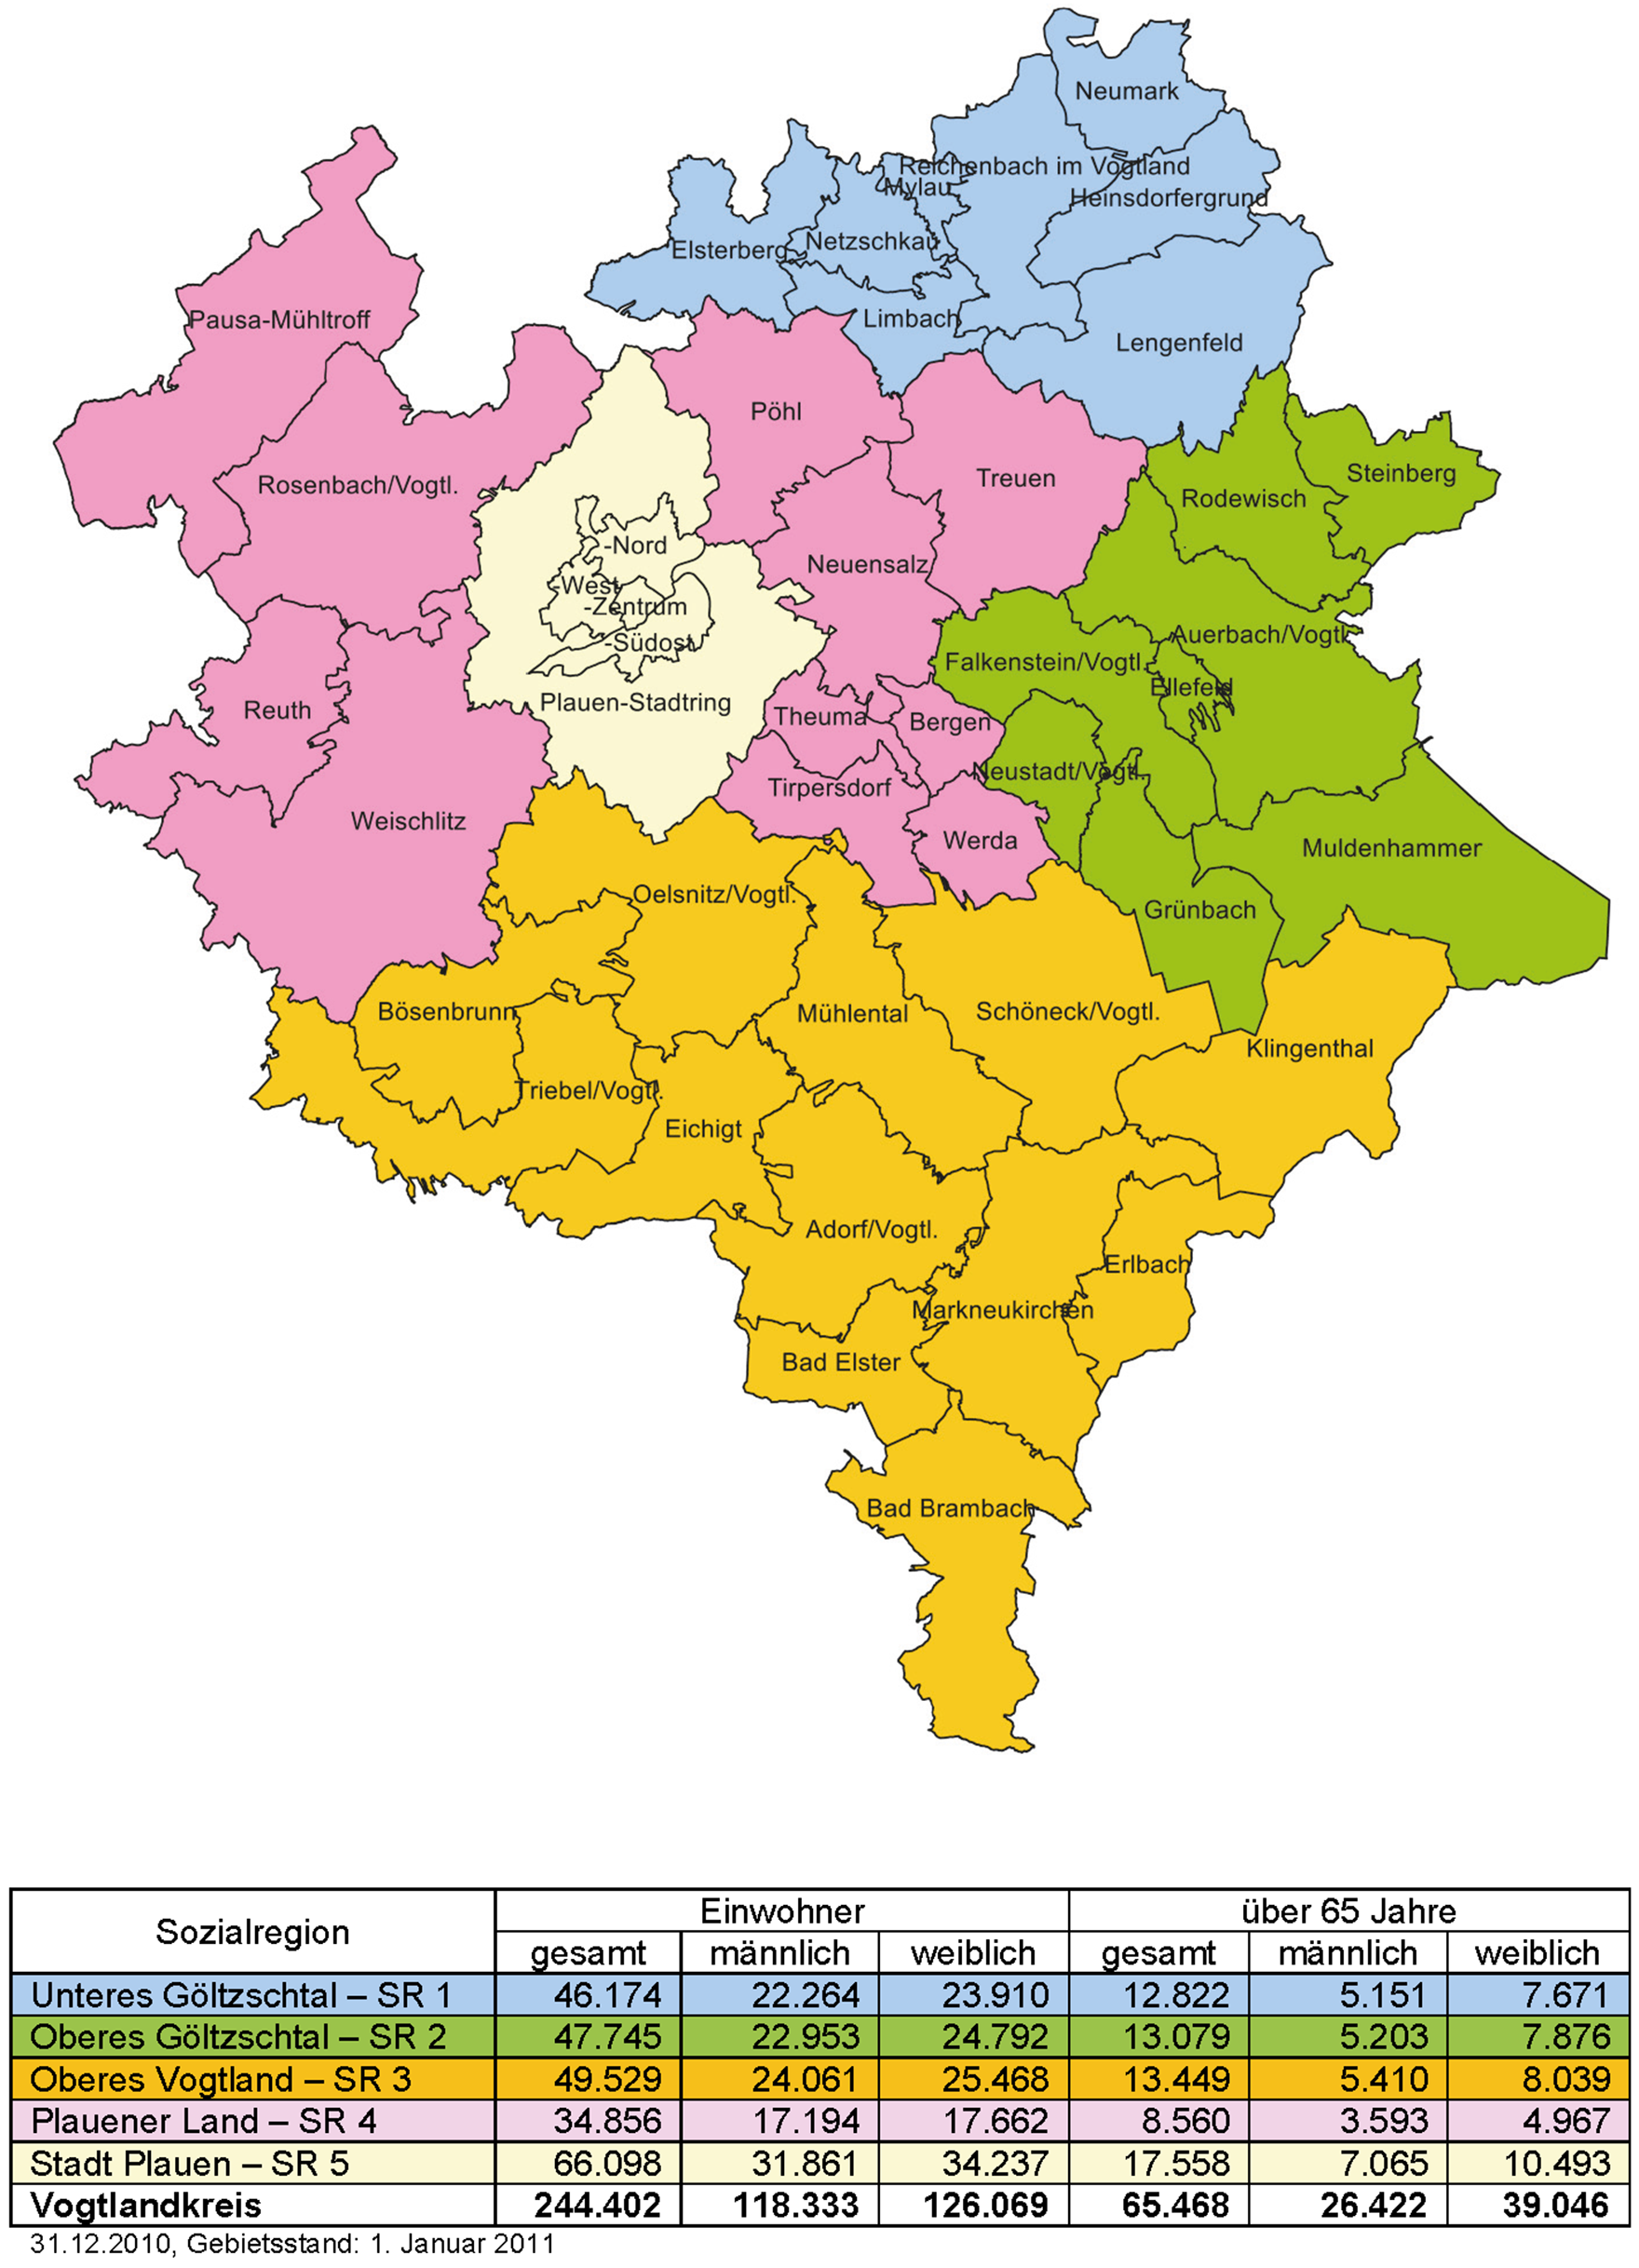 Die Abbildung zeigt die fünf Sozialregionen farblich abgegrenzt in Form einer Landkarte.